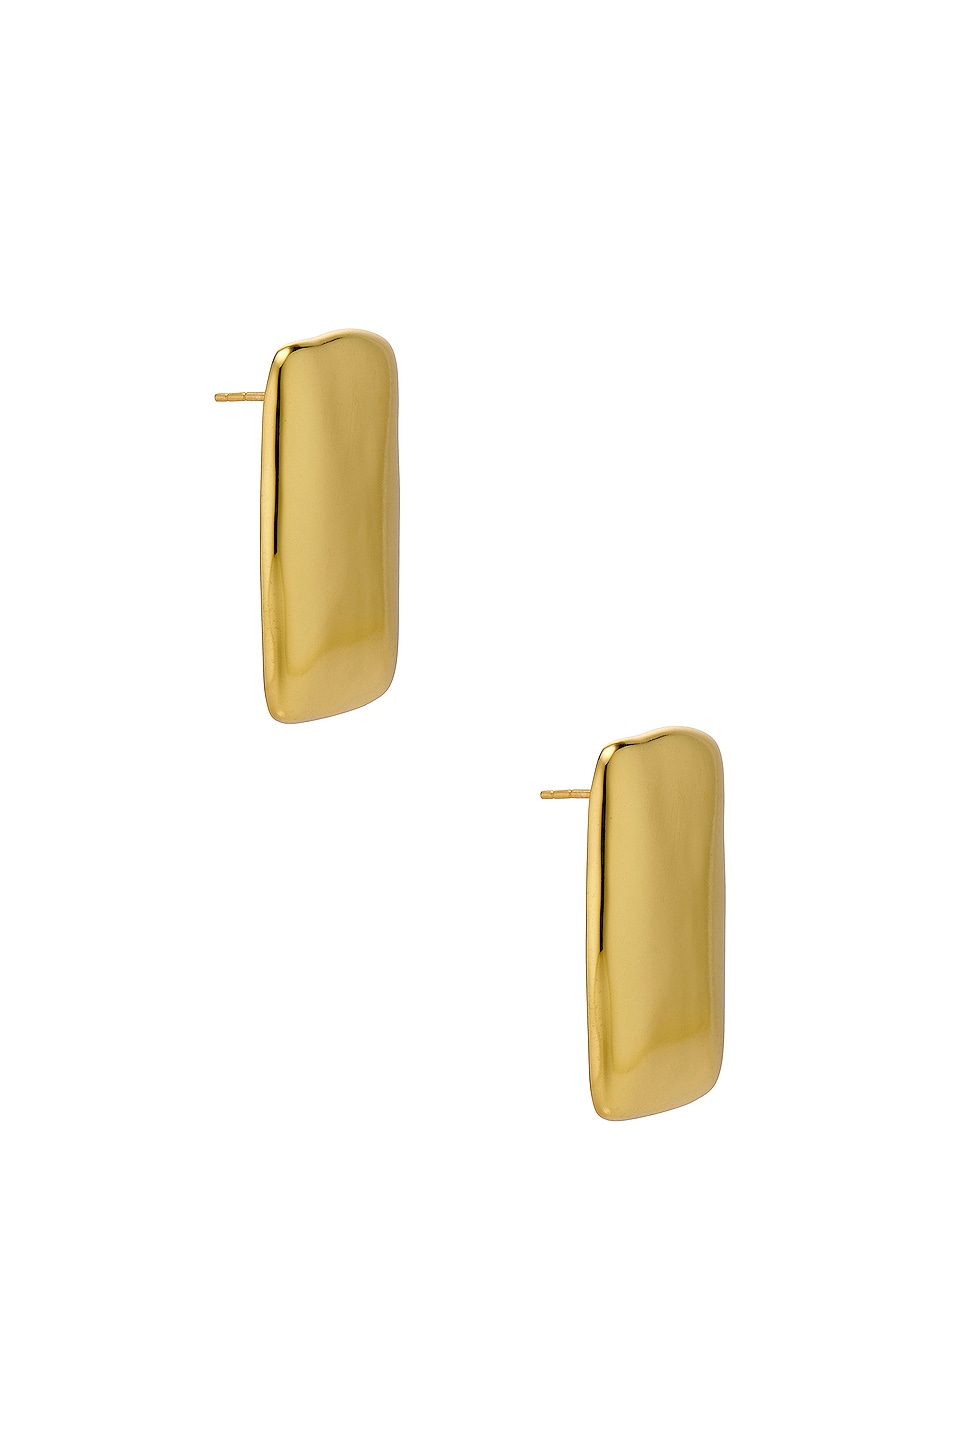 Cait Earrings in Metallic Gold